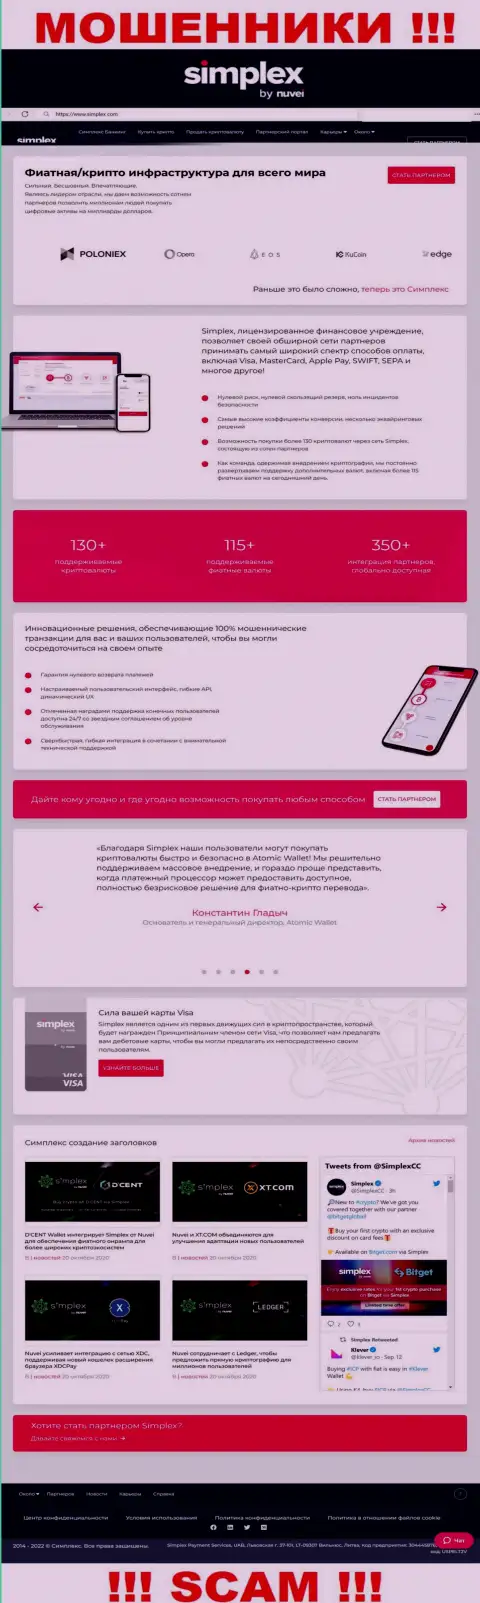 Внешний вид официальной web страницы жульнической организации Simplex